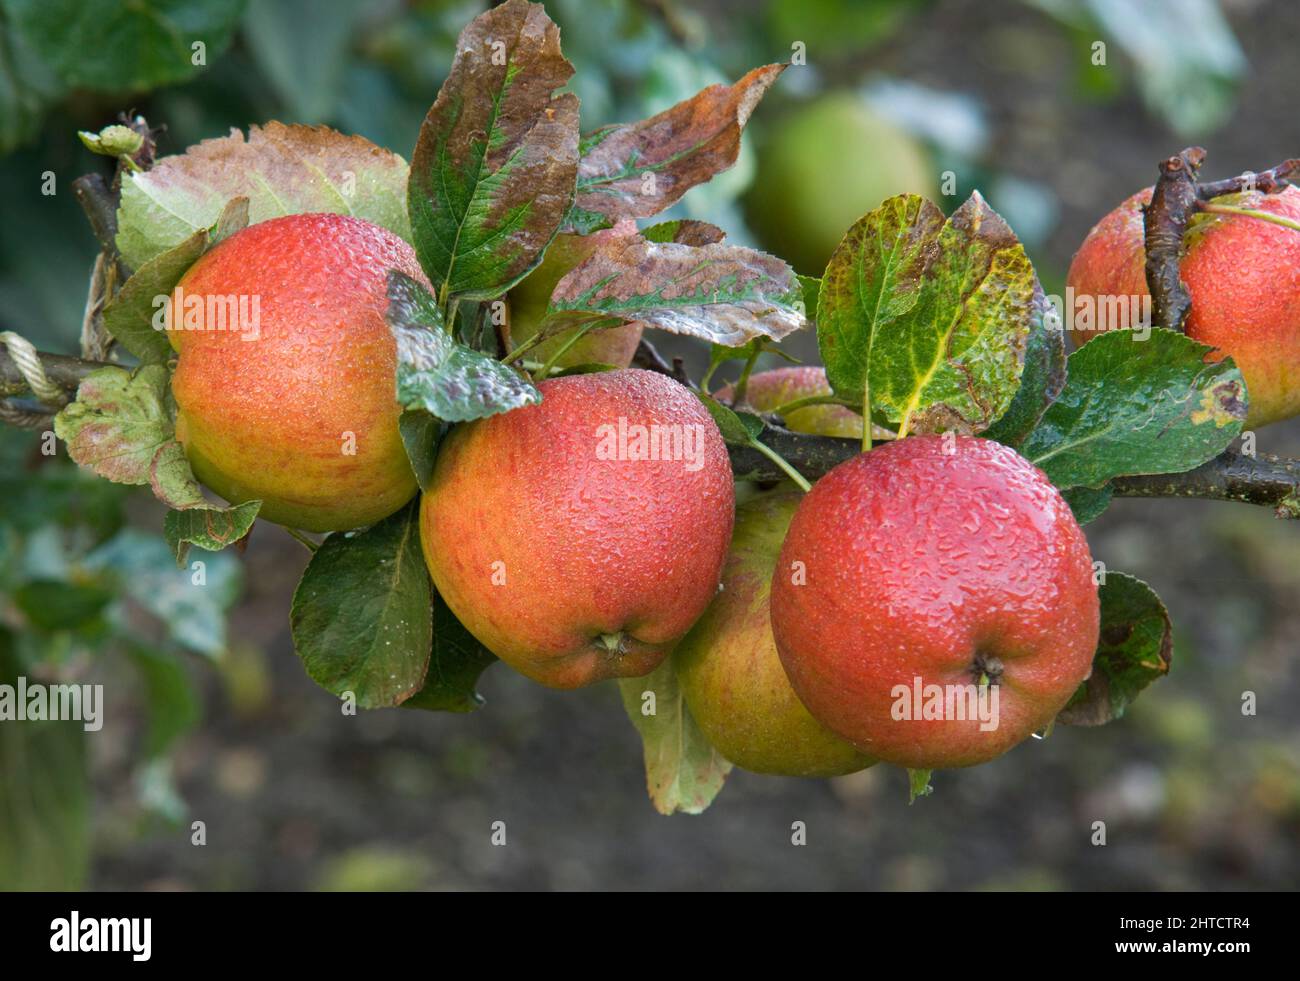 Audley End, Audley Park, Saffron Walden, Uttlesford, Essex, 2008. Detalle de las manzanas de postre Lord Burghley en un árbol de la finca. Foto de stock